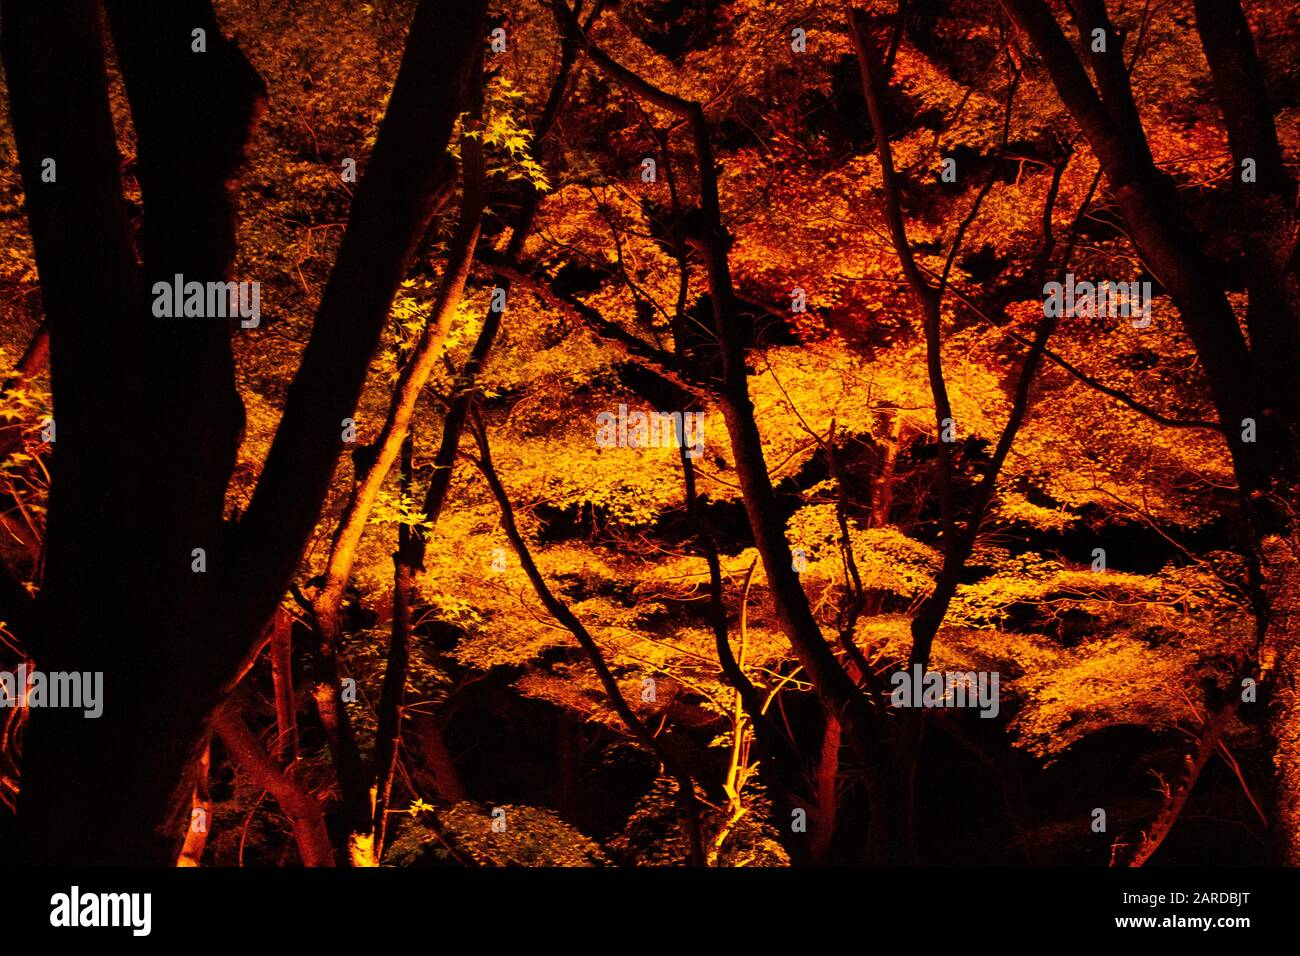 Nachtbeleuchtung in der Saison Kōyō" (Herbstlaub) Im Herbst wird der japanische Wald in leuchtenden Farben rot und orange Kyoto Dargestellt Stockfoto